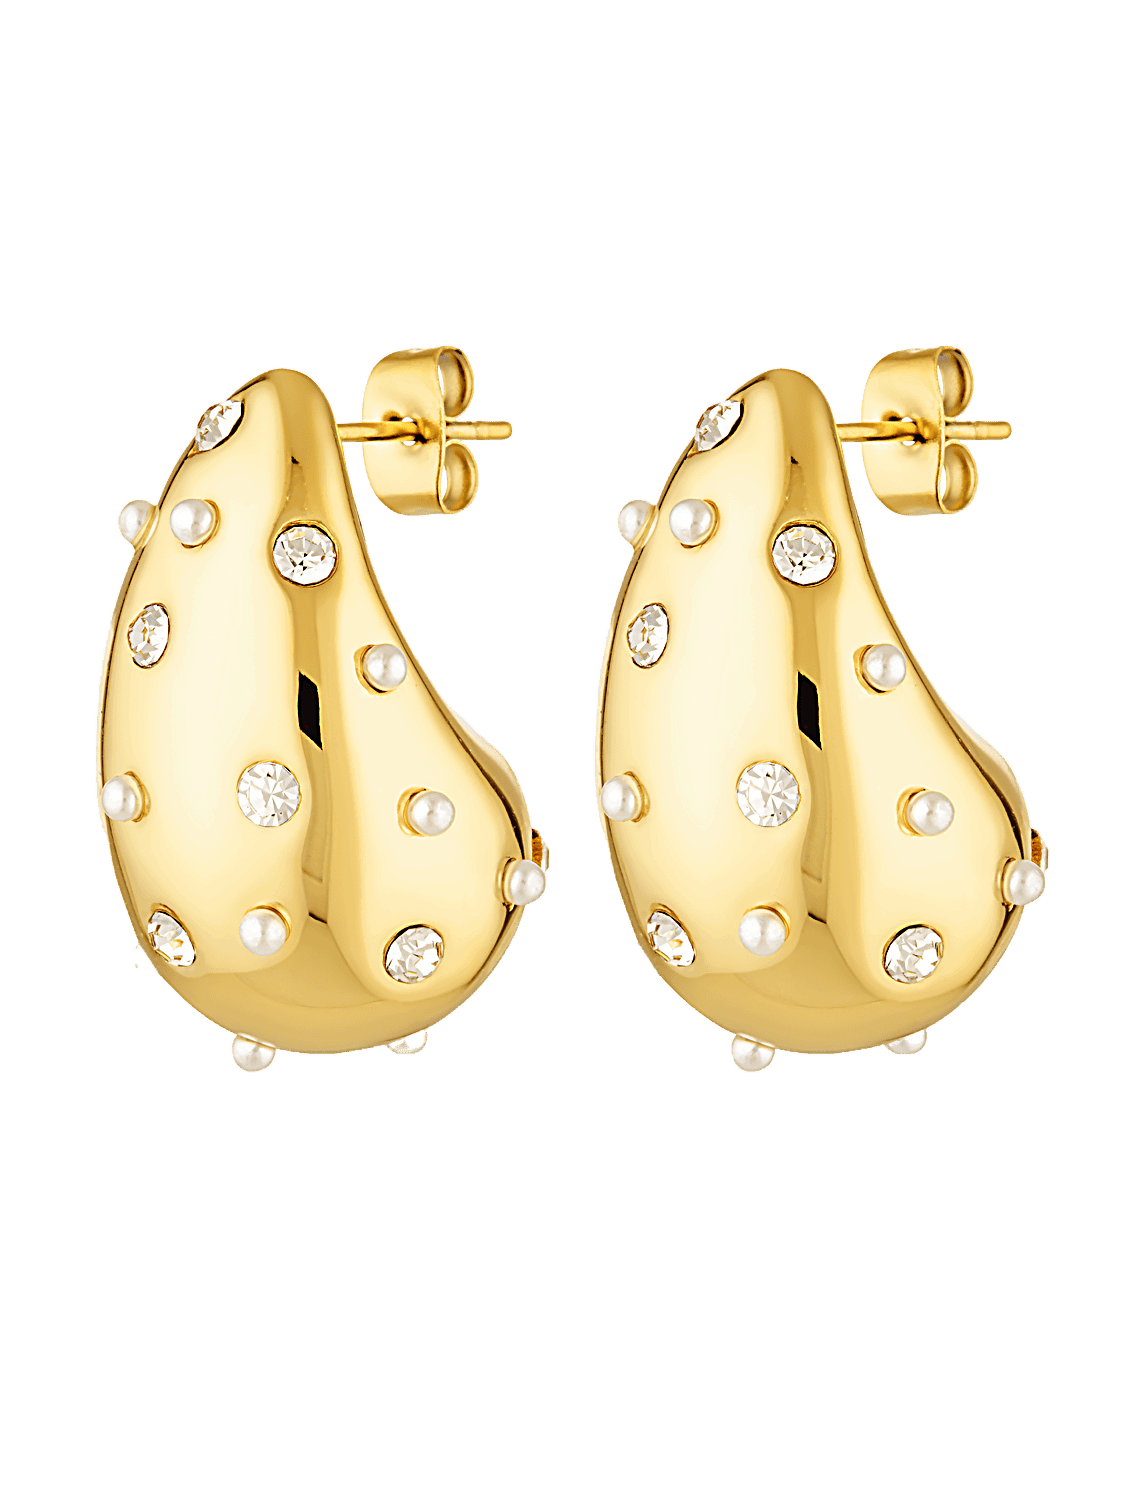 The Margarita Drop earrings. Teardrop shape with pearl feature